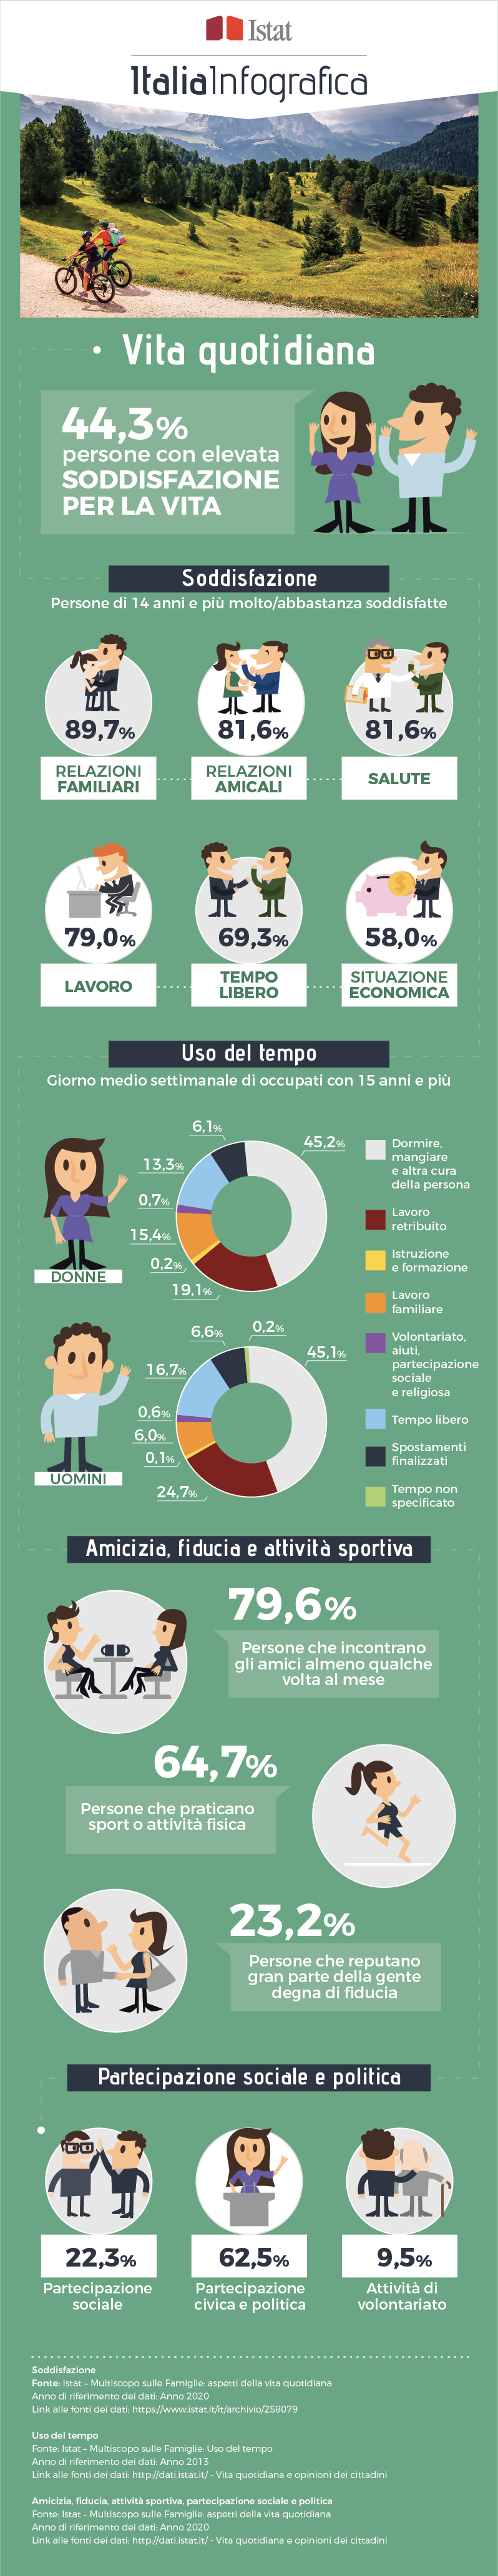 immagine di infografica con titolo ItaliaInfografica-VitaQuotidiana